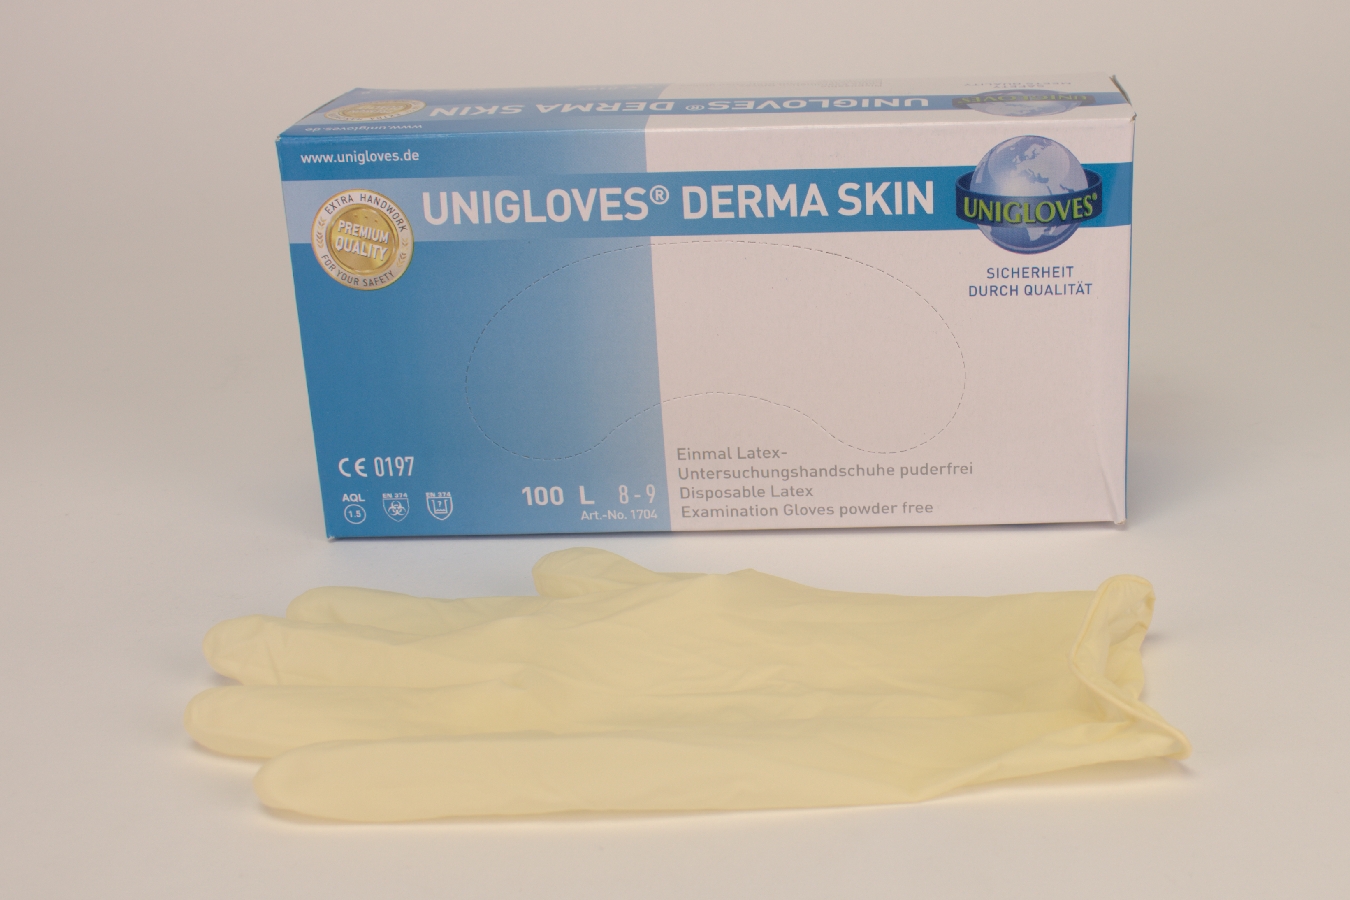 Derma Skin Latex Handsch. puderfrei L  100 Stück